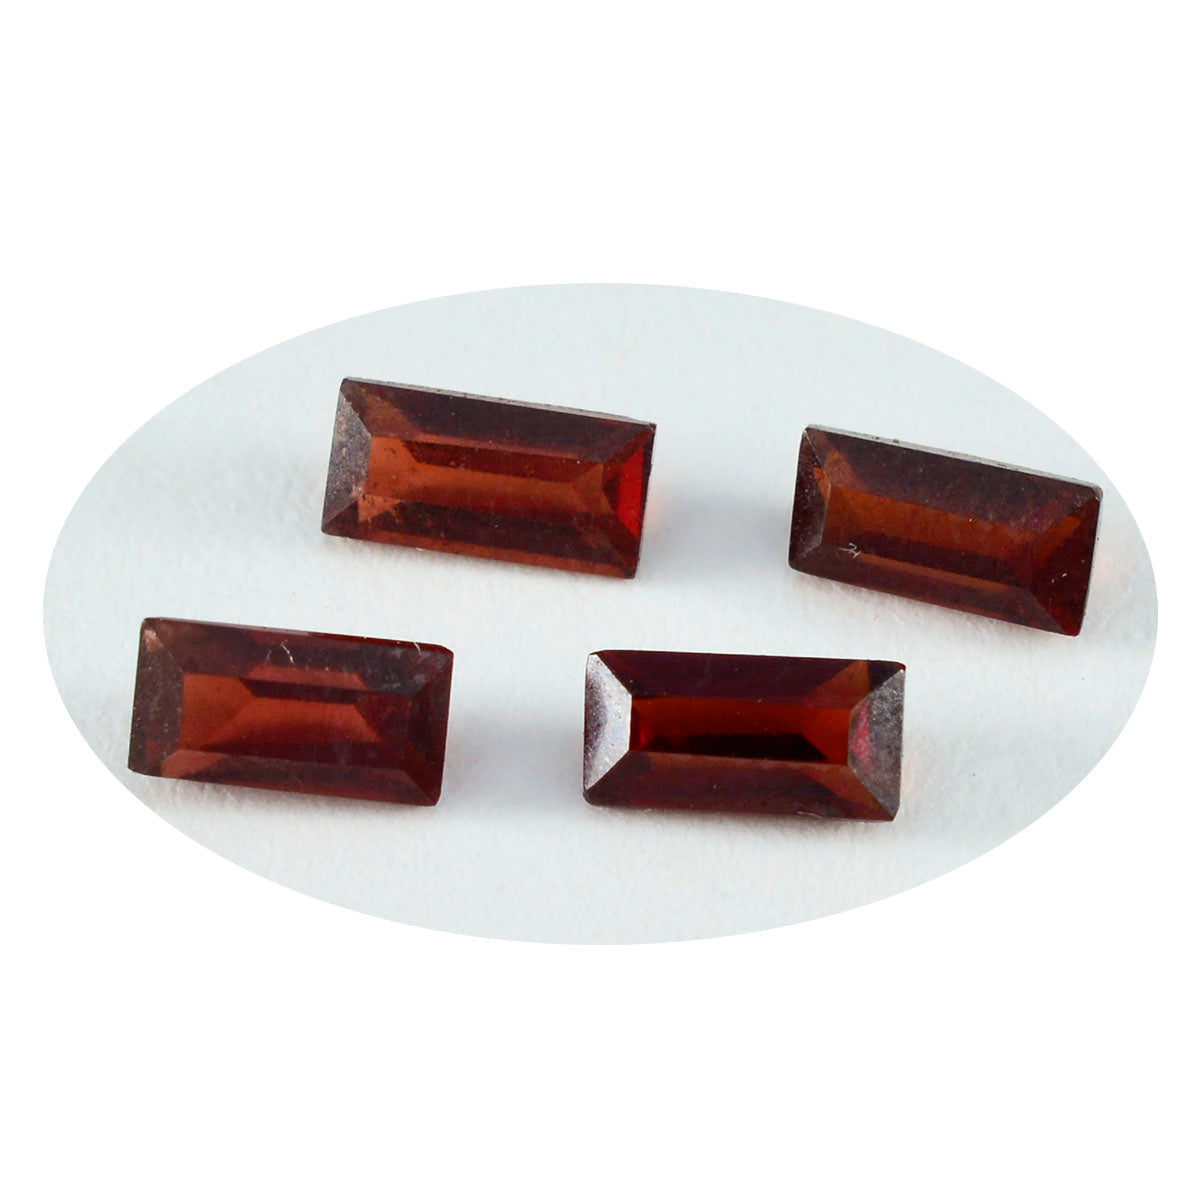 riyogems 1 шт. натуральный красный гранат ограненный 5x10 мм в форме багета удивительного качества, россыпь драгоценных камней